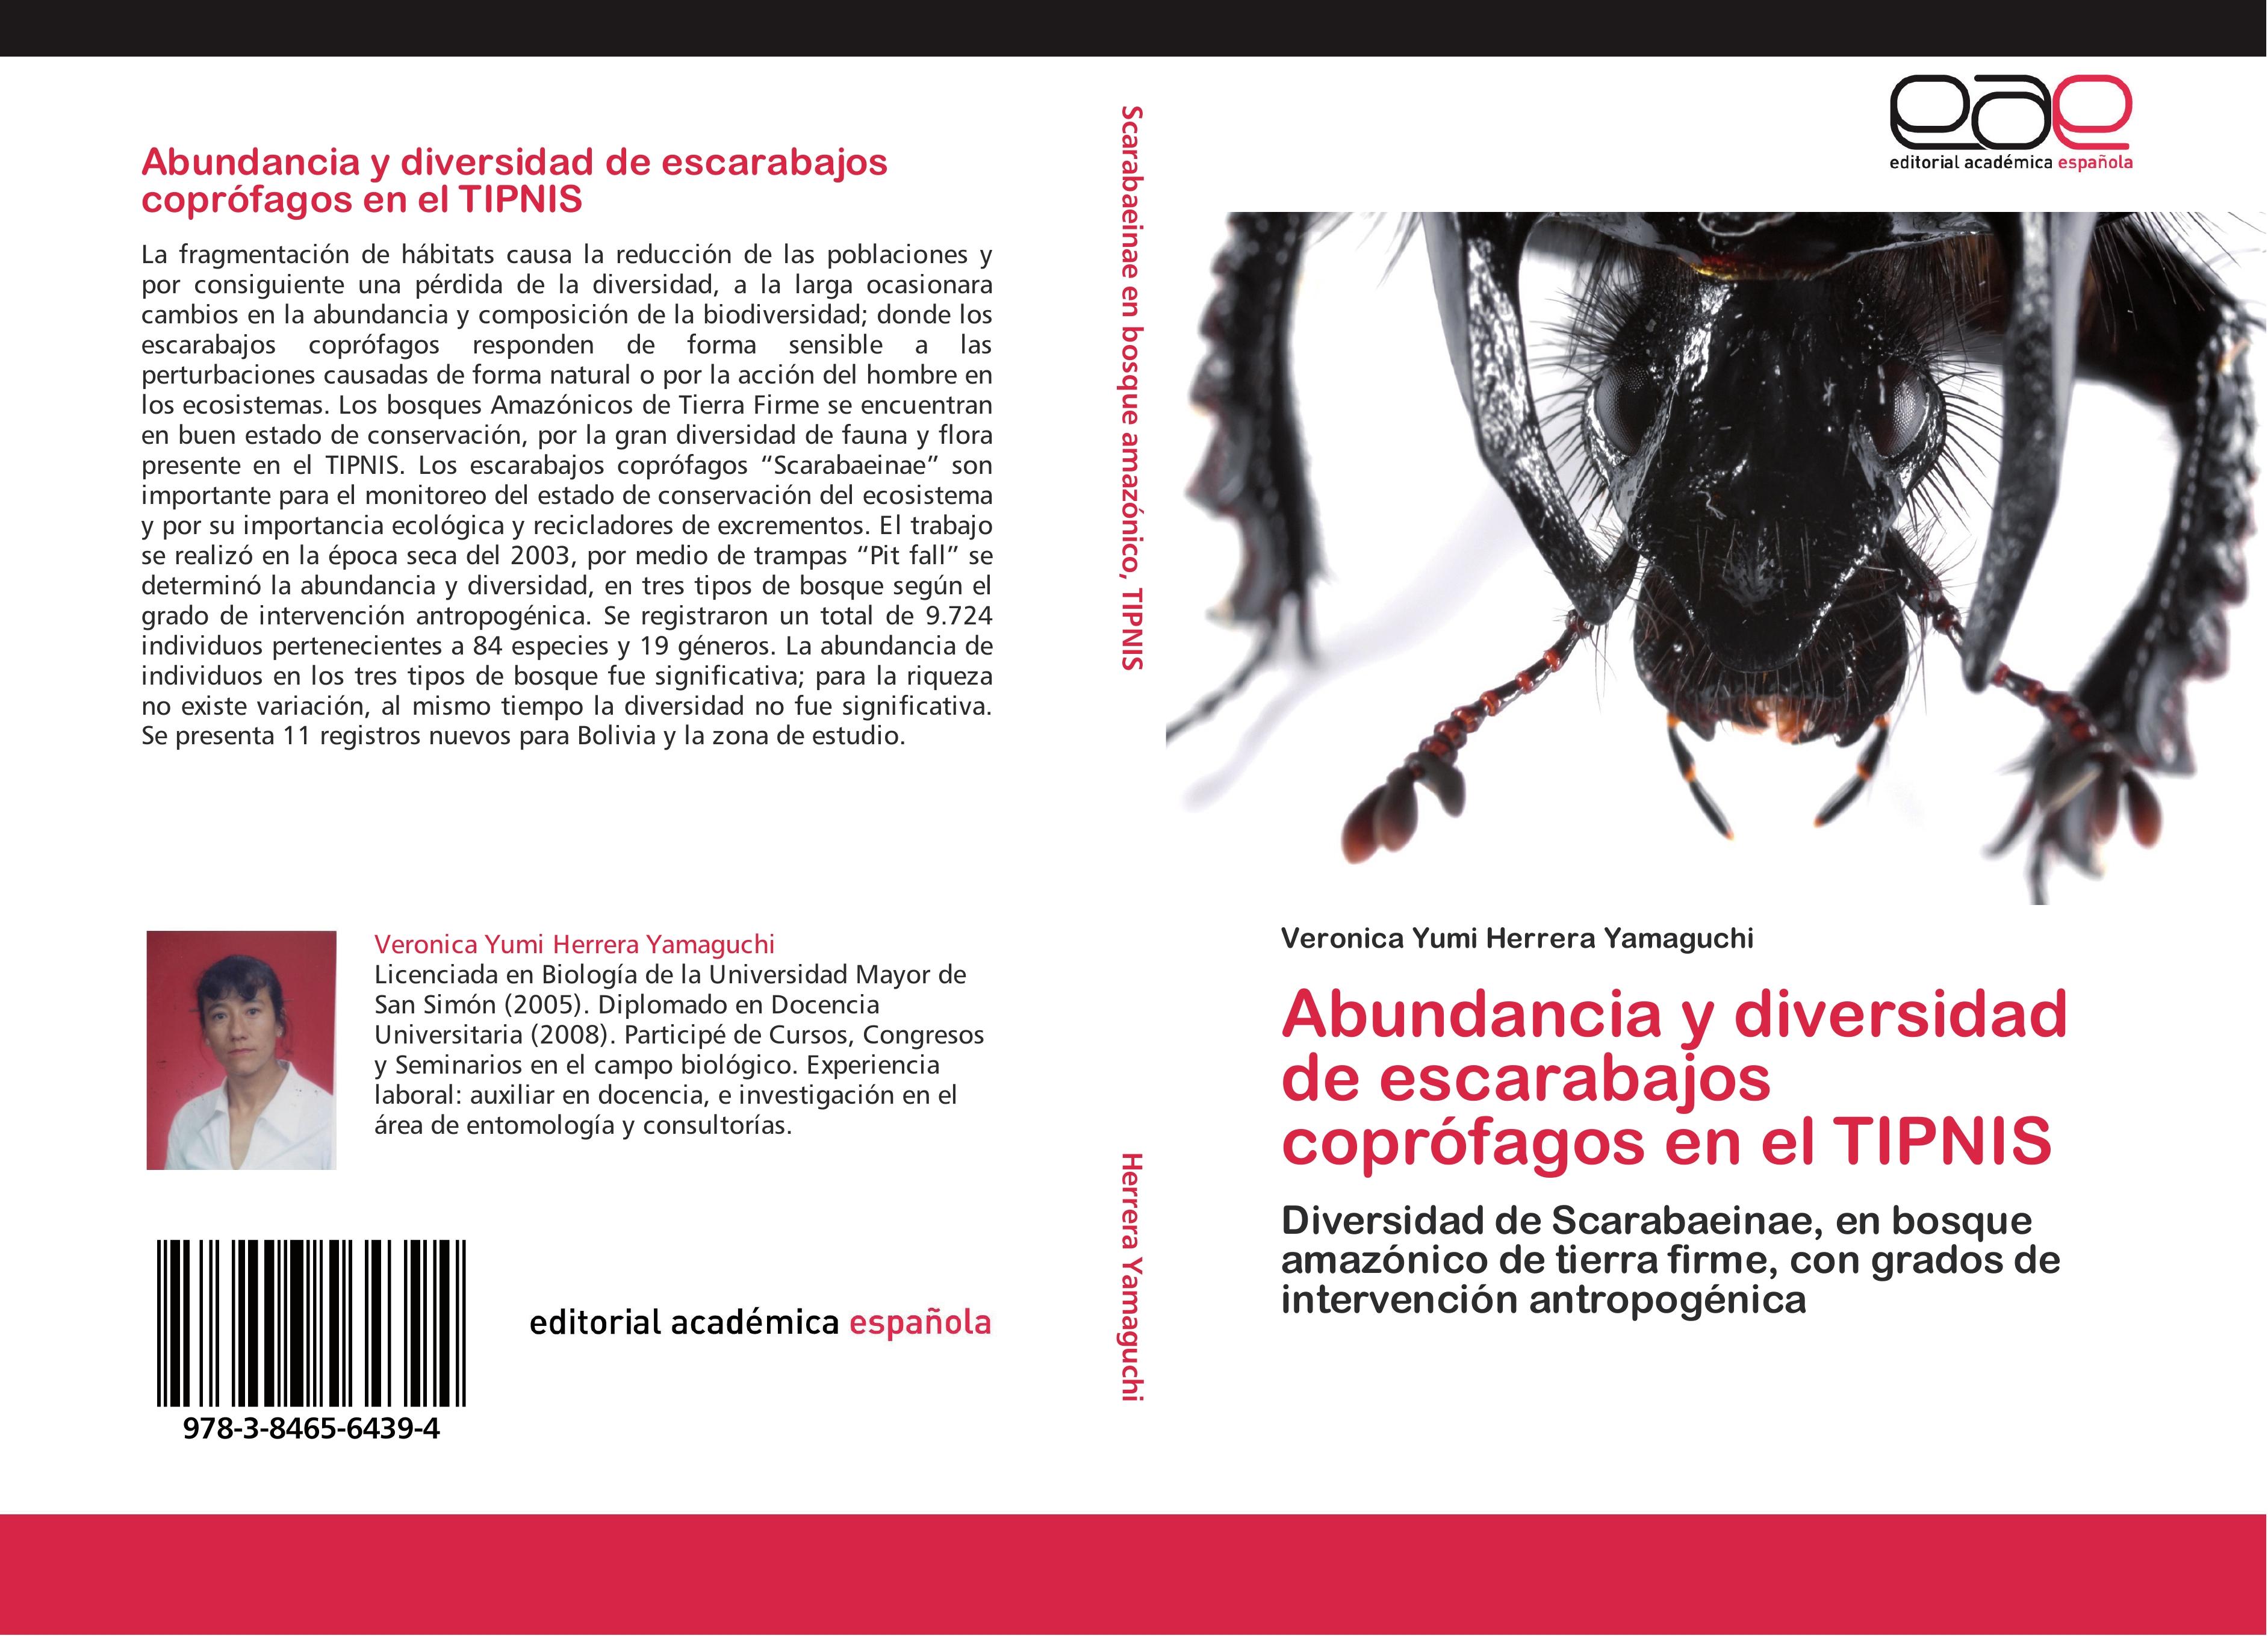 Abundancia y diversidad de escarabajos coprófagos en el TIPNIS - Veronica Yumi Herrera Yamaguchi